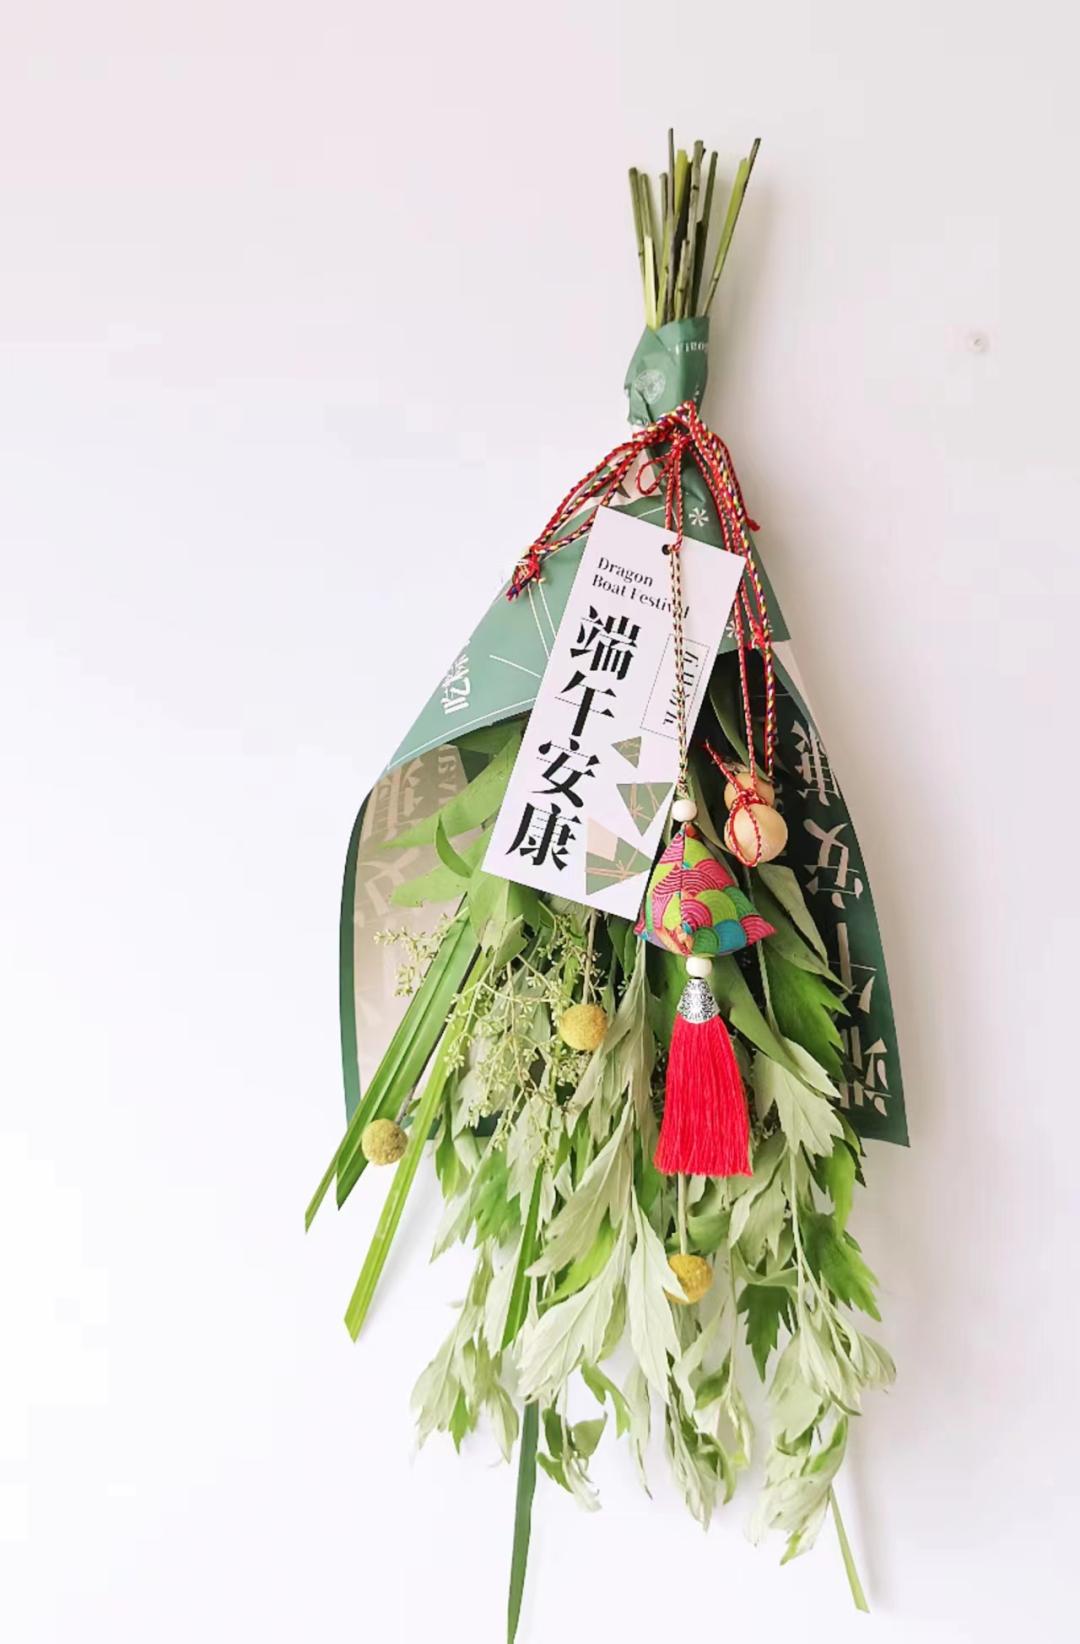 清明插柳,端午插艾,在门上倒挂艾草是端午节的传统习俗之一